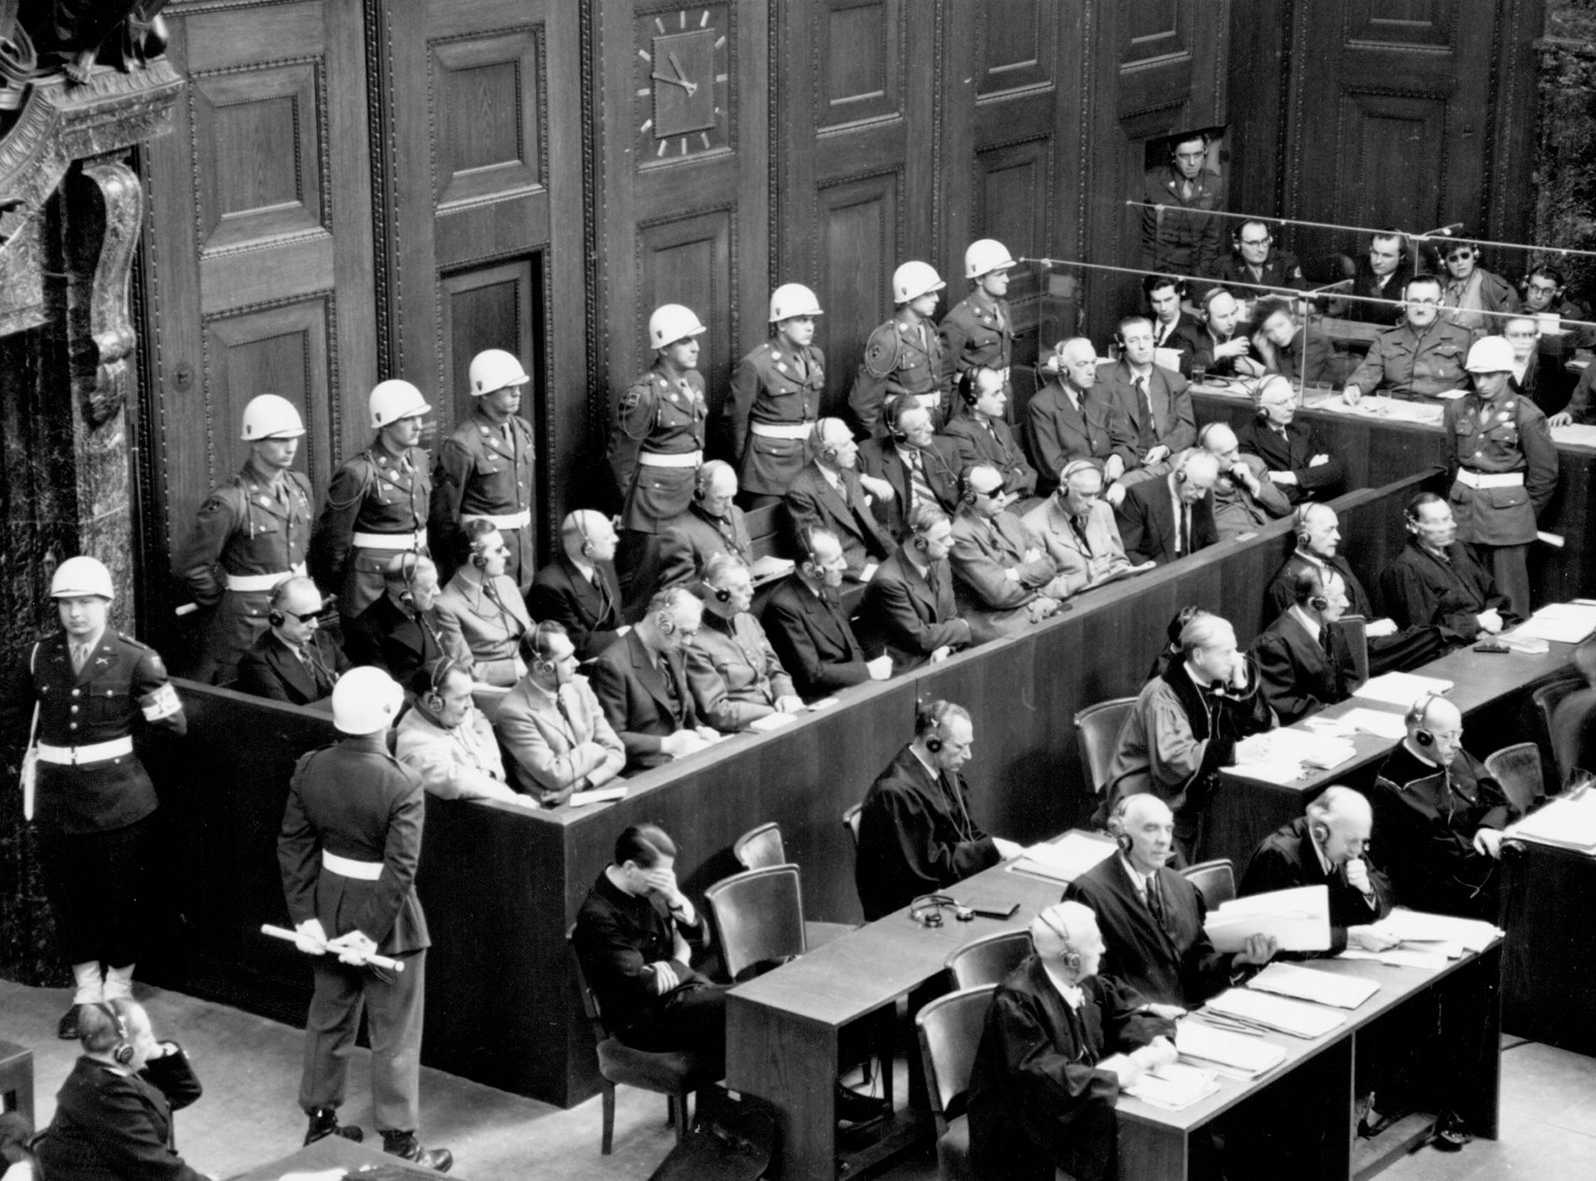 Die Abbildung zeigt die Anklagebank mit den Hauptangeklagten der Nürnberger Prozesse. Die Fotoaufnahme stammt aus den National Archives in den USA.